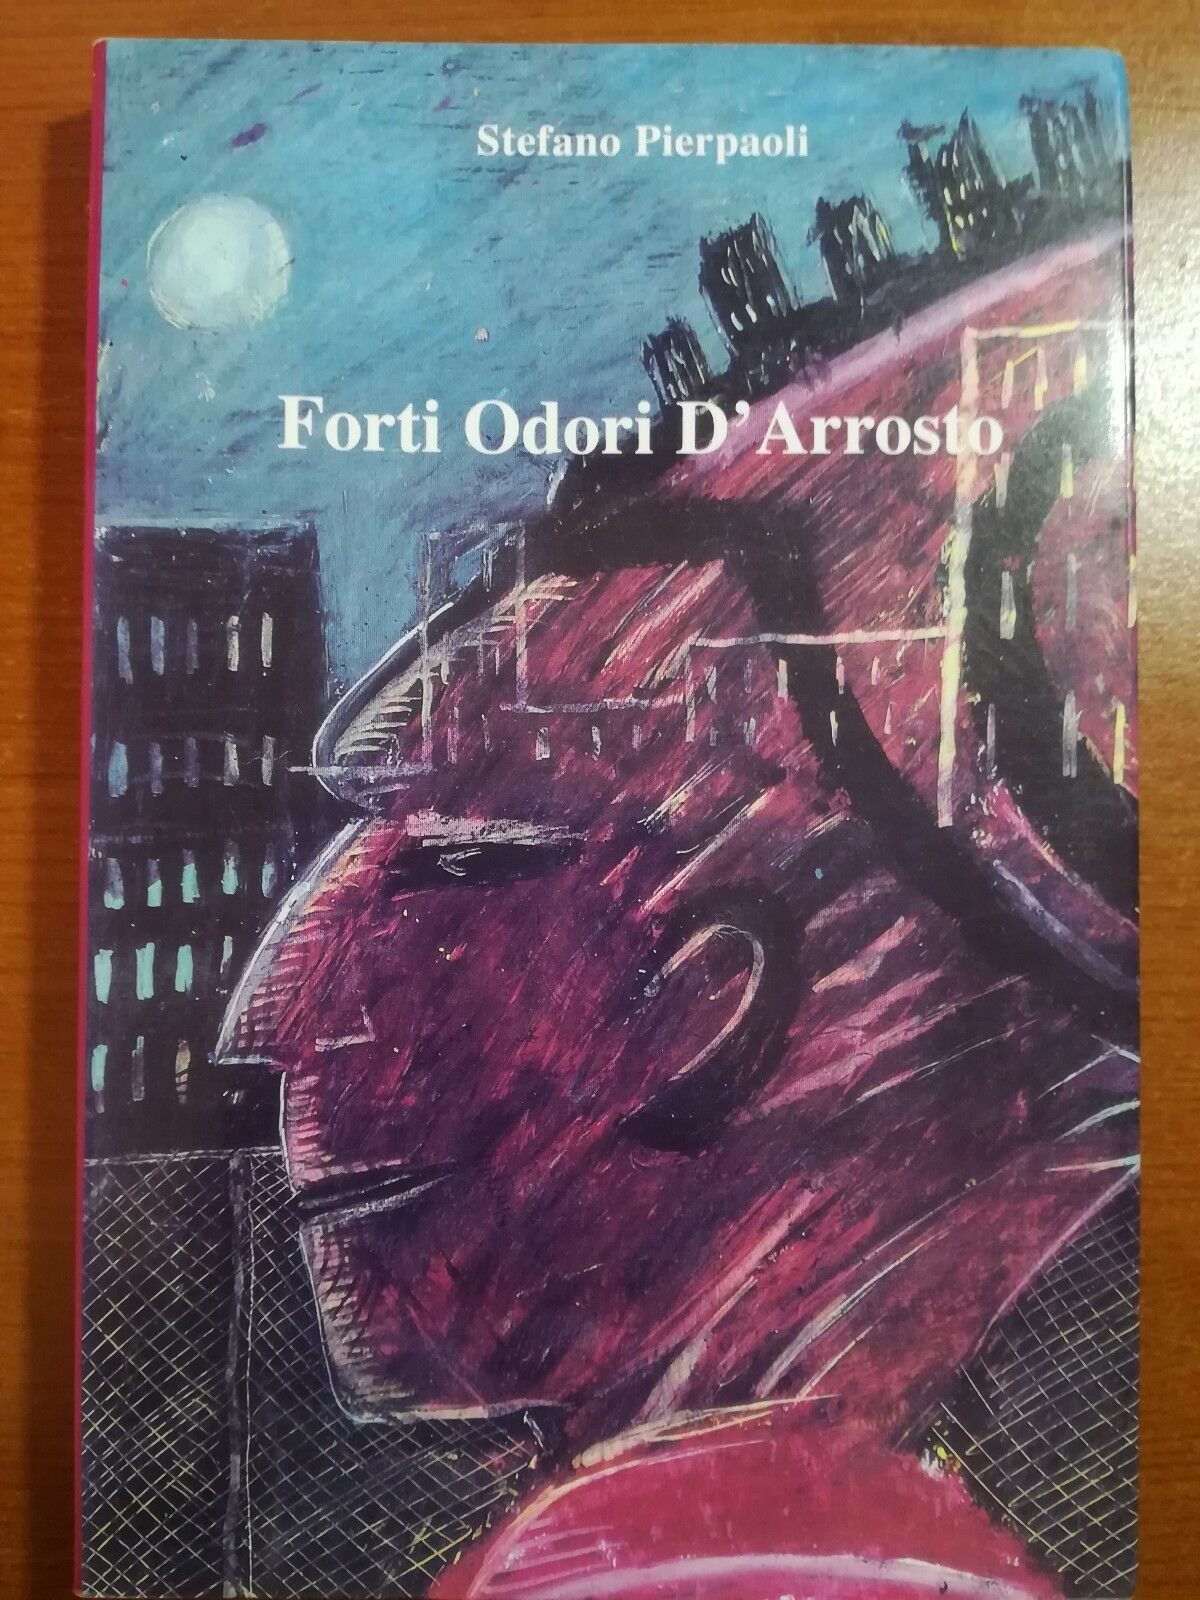 Forti odori d'Arrosto - Stefano Pierpaoli - Tipografia Artistica - 2004 - M